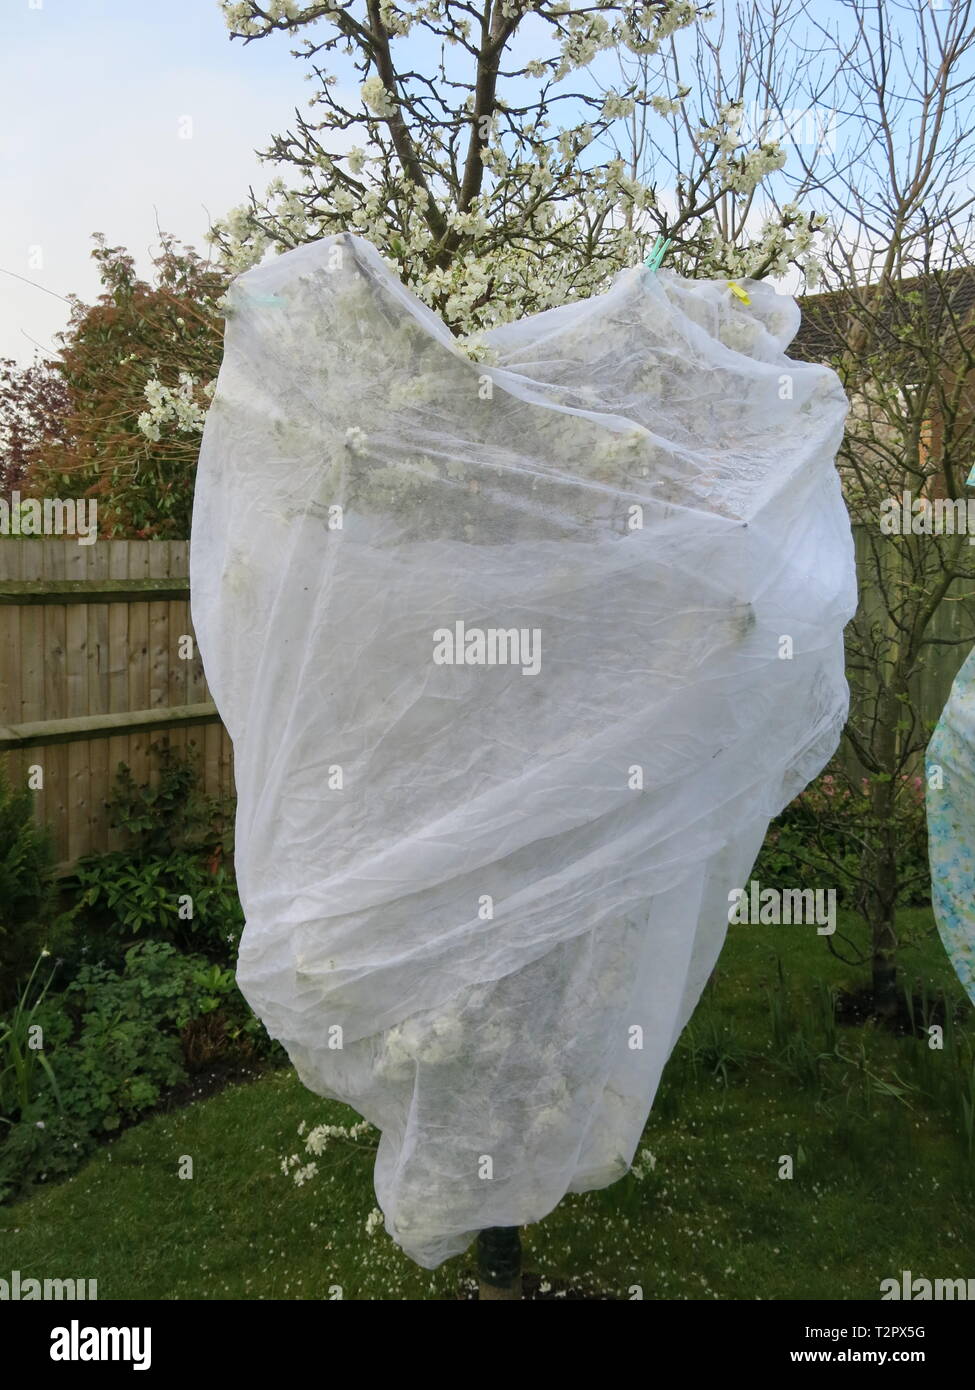 Gartenbau Fleece wird verwendet, um die Blüte einer Frucht Baum in einem Englischen Garten zu schützen; Gärtner Vorsicht vor einer scharfen Frost im April 2019. Stockfoto